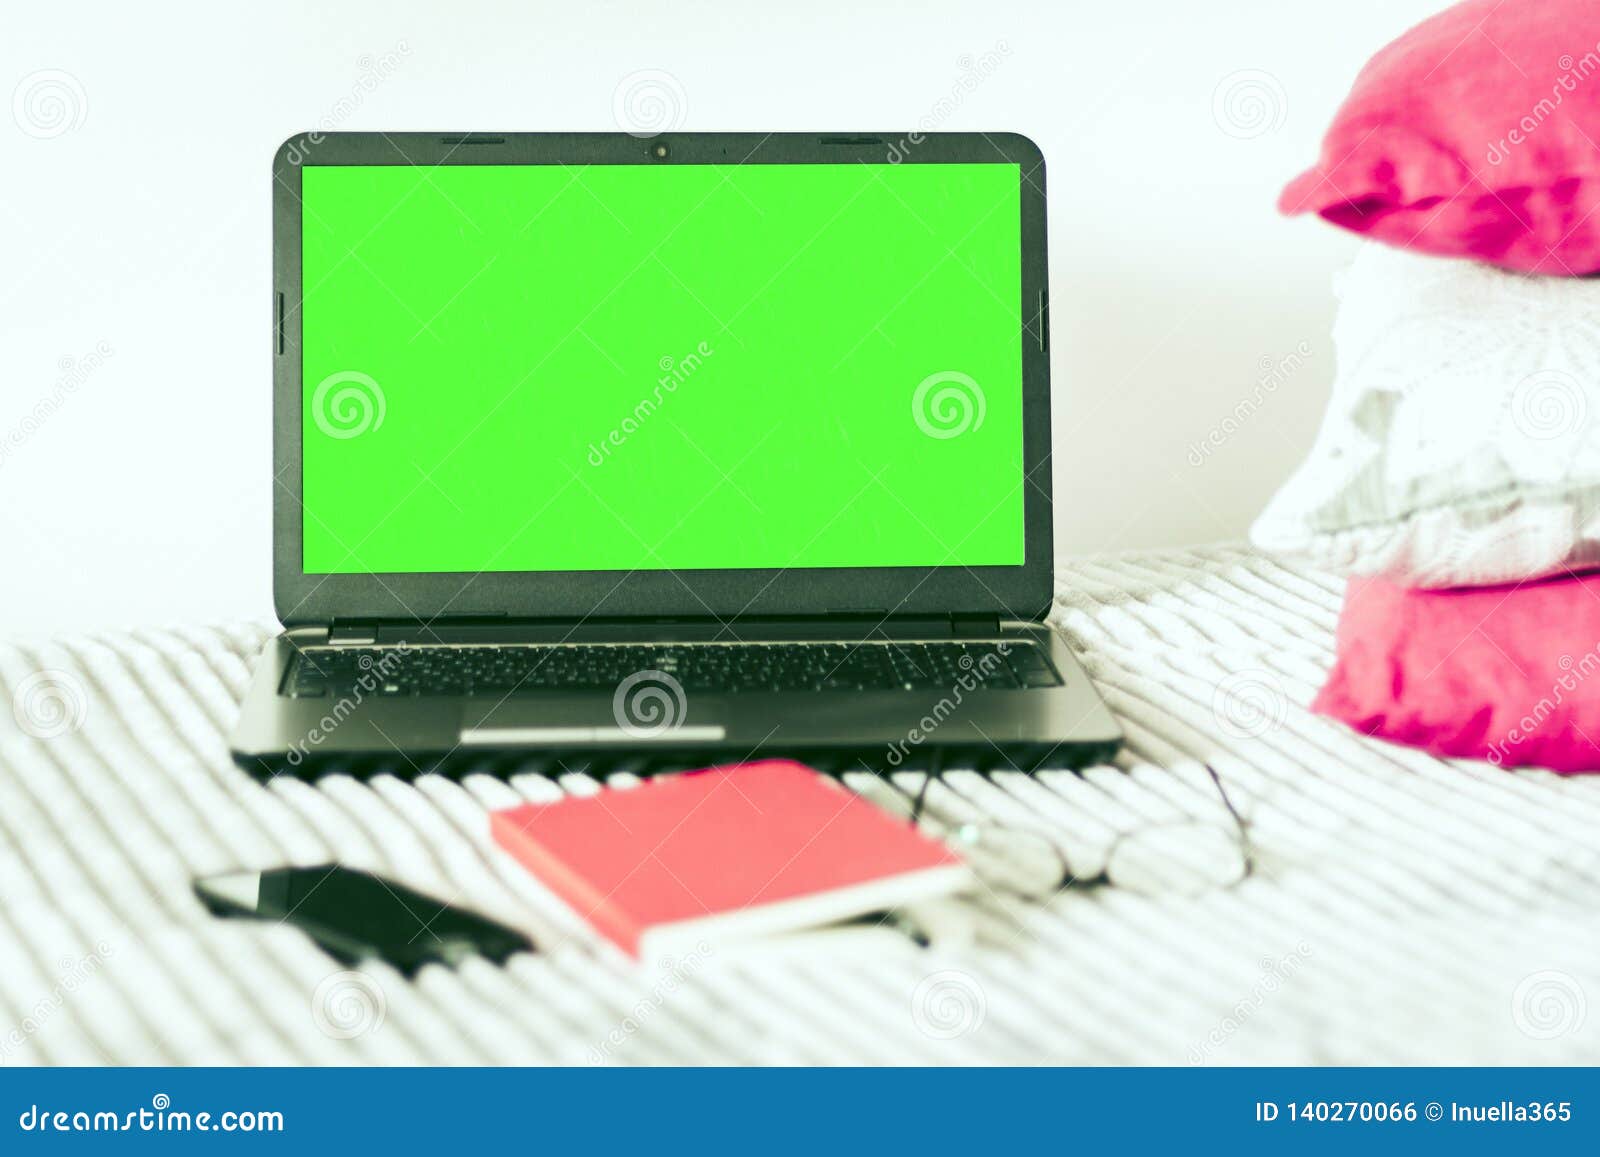 Sự kết hợp tuyệt vời giữa màu xanh và thiết kế laptop hiện đại chắc chắn sẽ thu hút sự chú ý của bạn. Để khám phá hình ảnh của chiếc laptop xanh nền trong môi trường làm việc hoặc học tập, hãy bấm vào liên kết tương ứng.